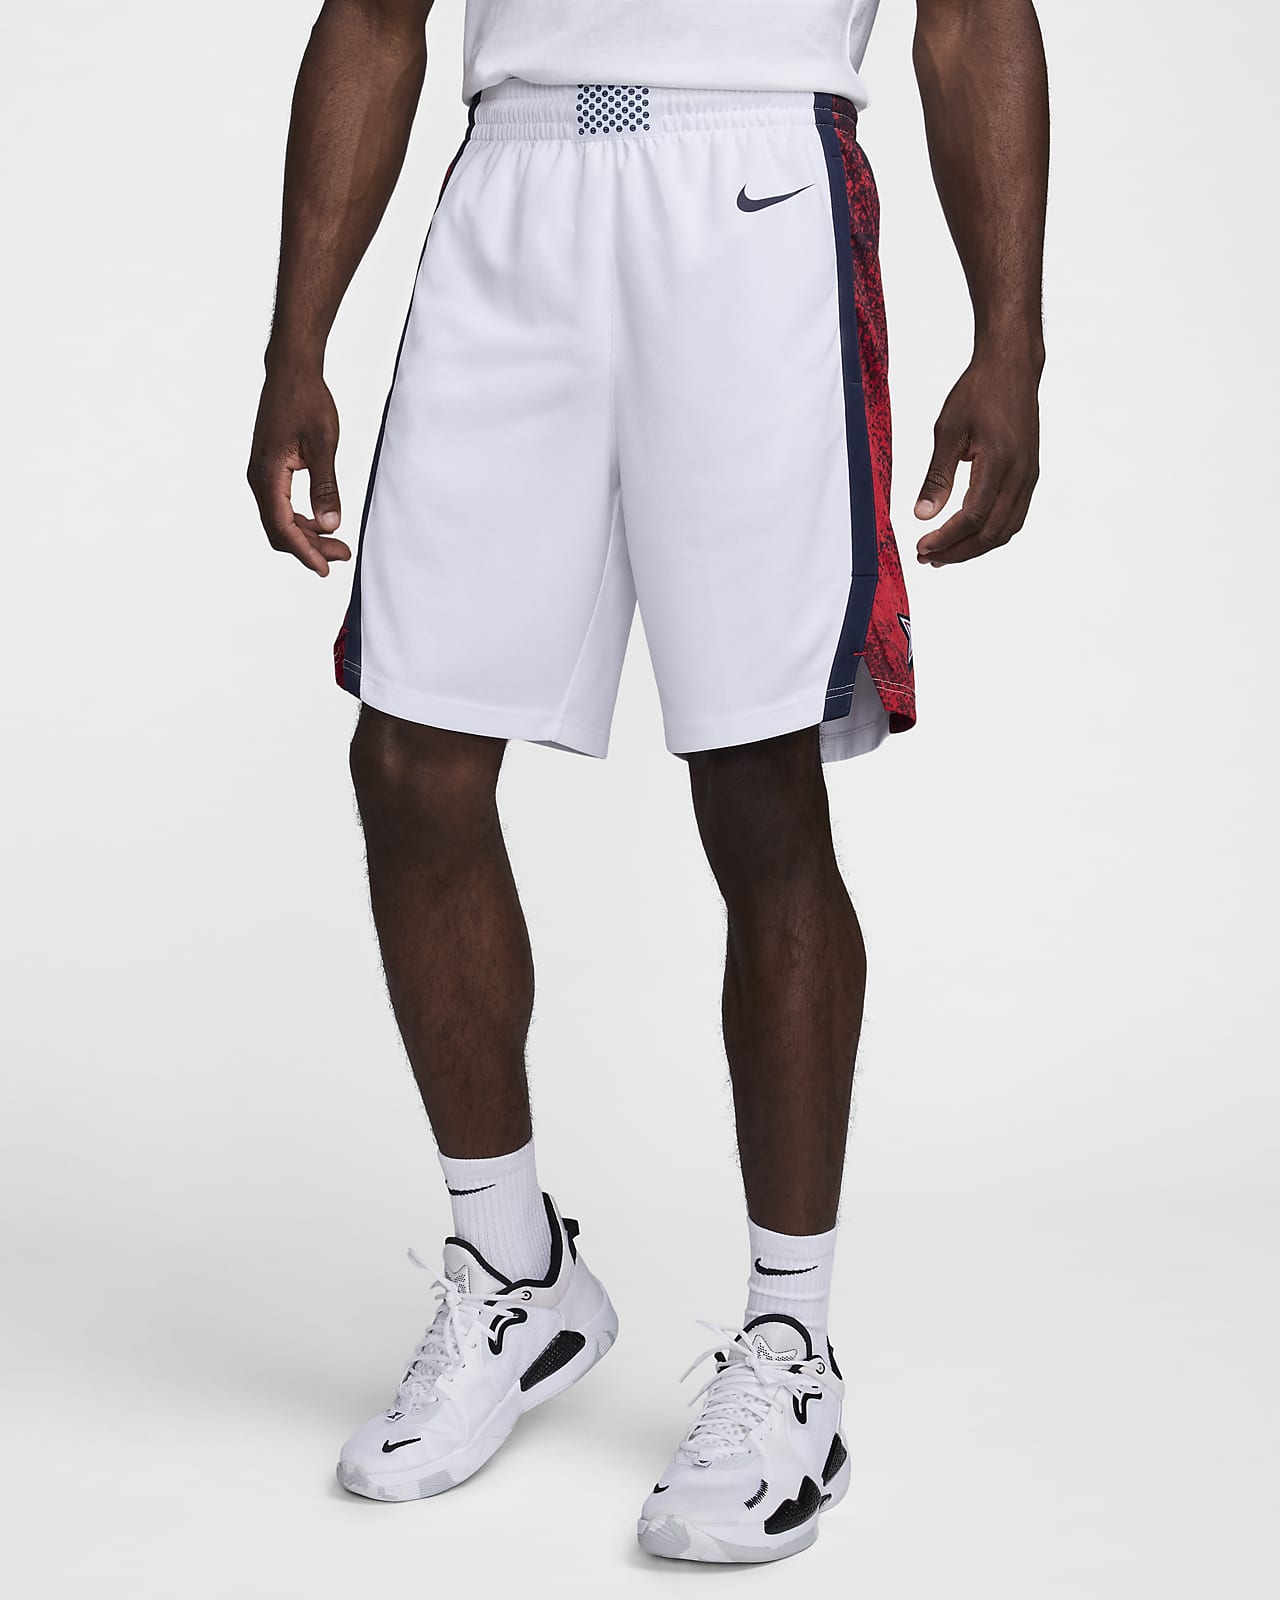 Shorts da basket Nike USA Limited da uomo – Home